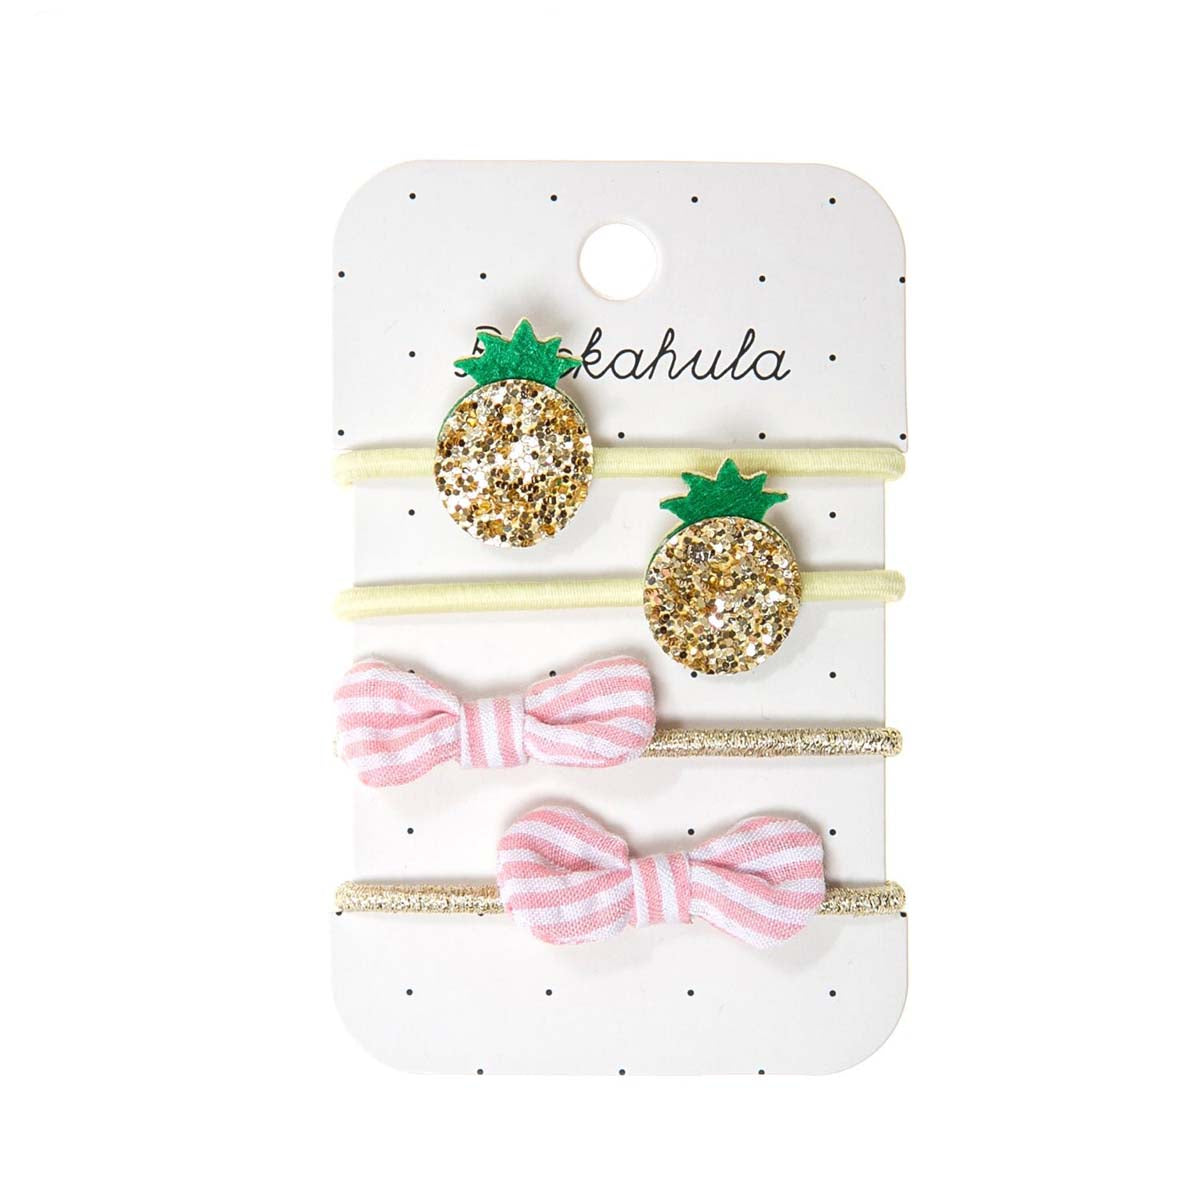 Een tropische toevoeging met Rockahula’s pinapple elastiekjes! De set bestaat uit 4 elastieken in verschillende kleuren en versieringen: glitter ananassen en roze met wit gestreepte strikjes. Handig en hip! VanZus